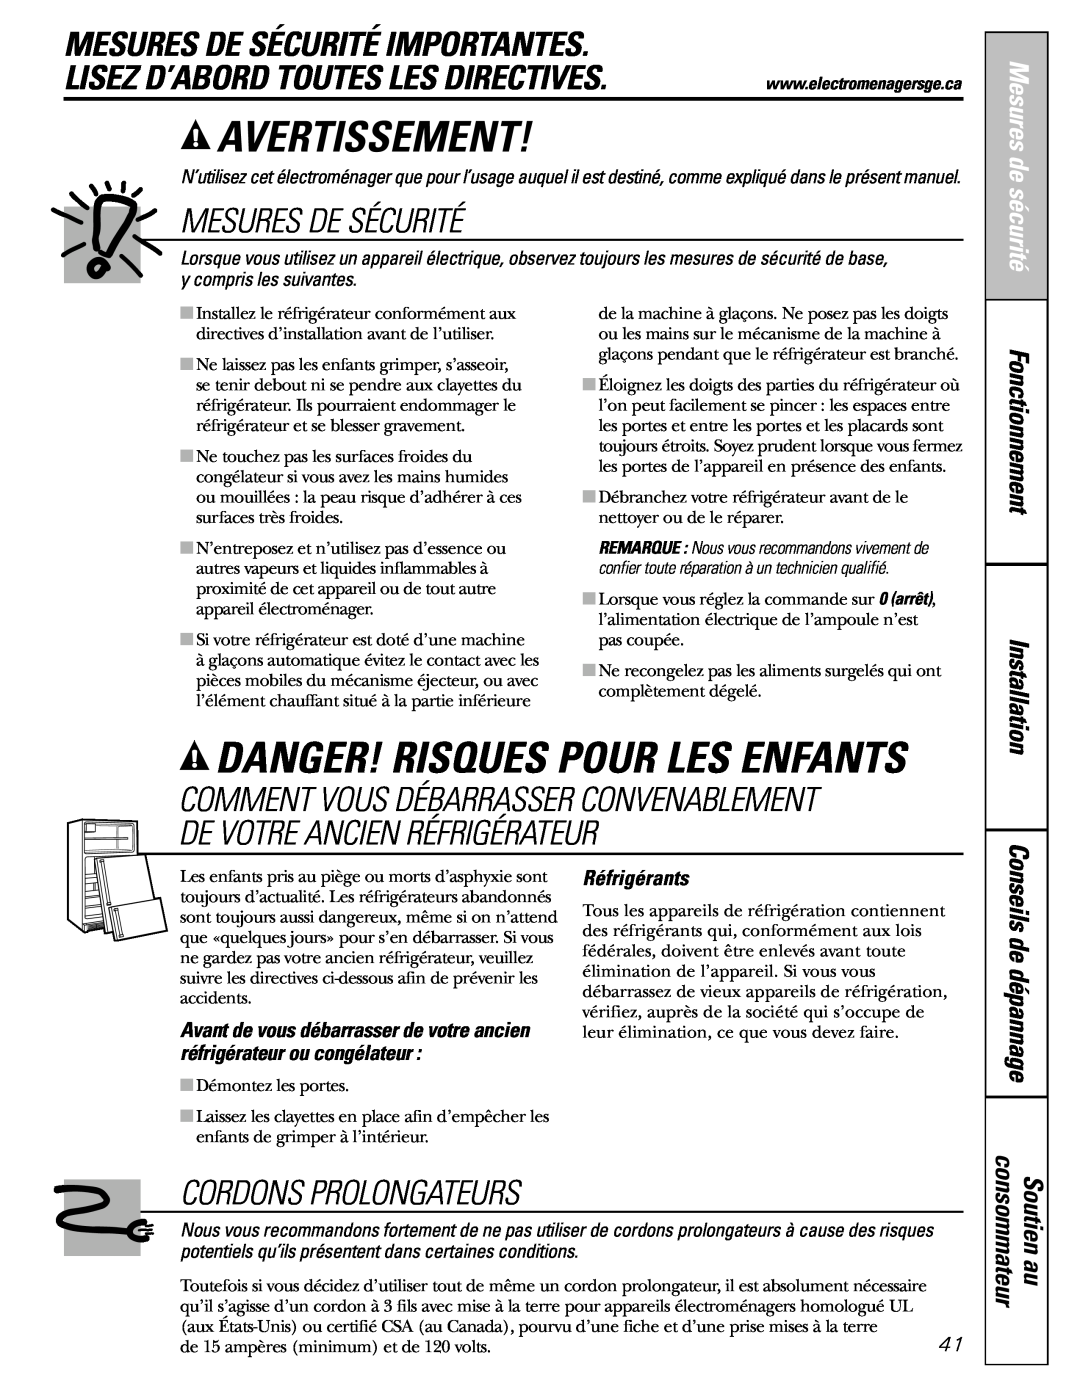 GE 25 and 27 Avertissement, Danger! Risques Pour Les Enfants, Mesures De Sécurité Importantes, Cordons Prolongateurs 